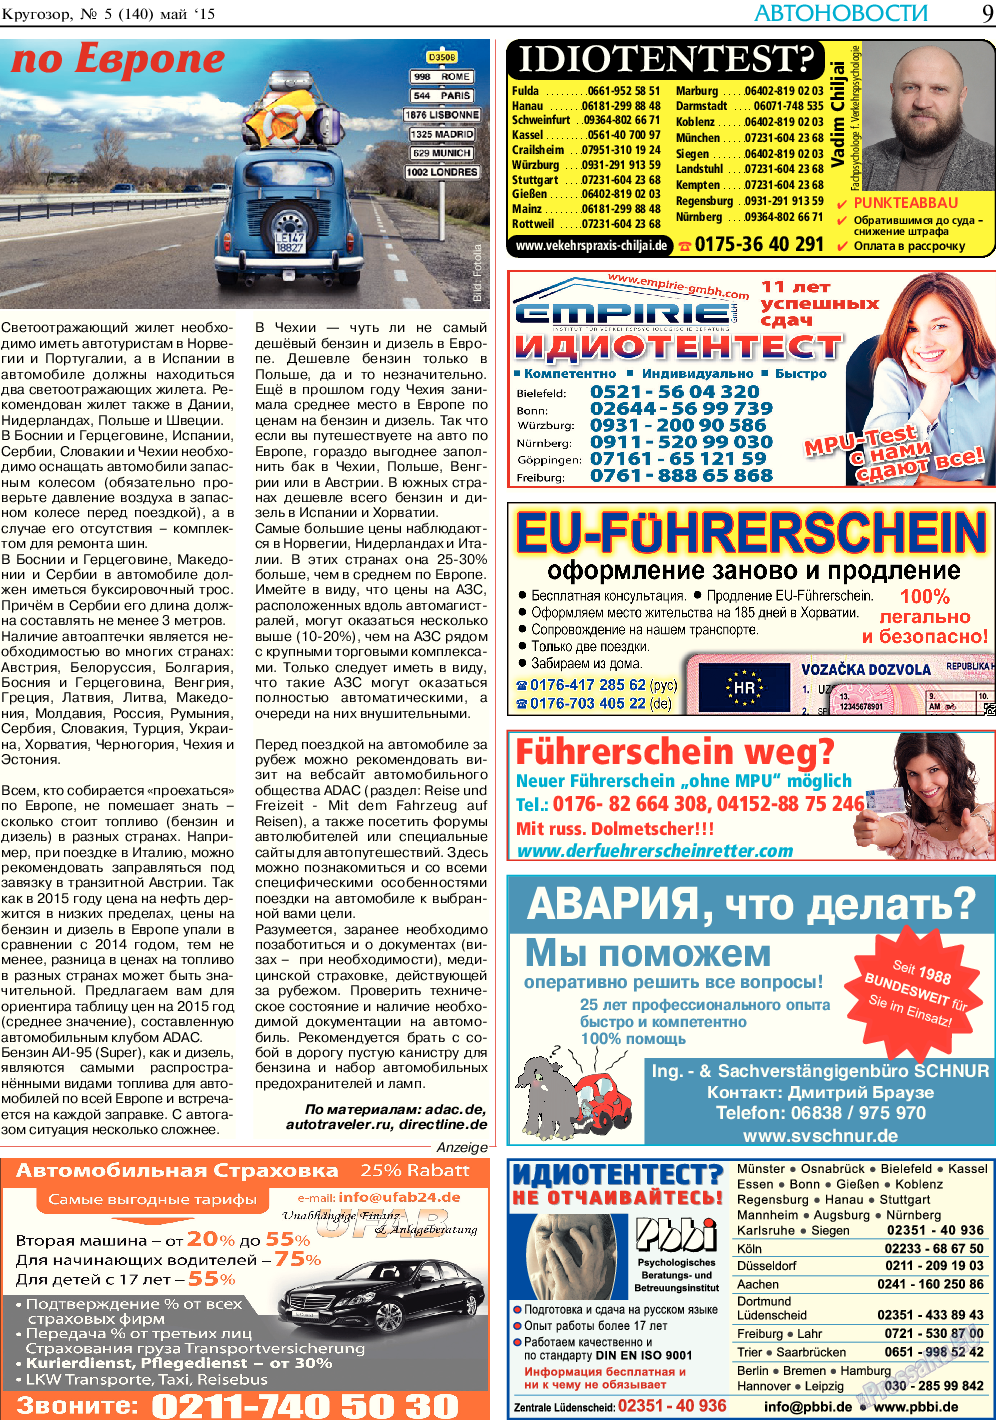 Кругозор (газета). 2015 год, номер 5, стр. 9